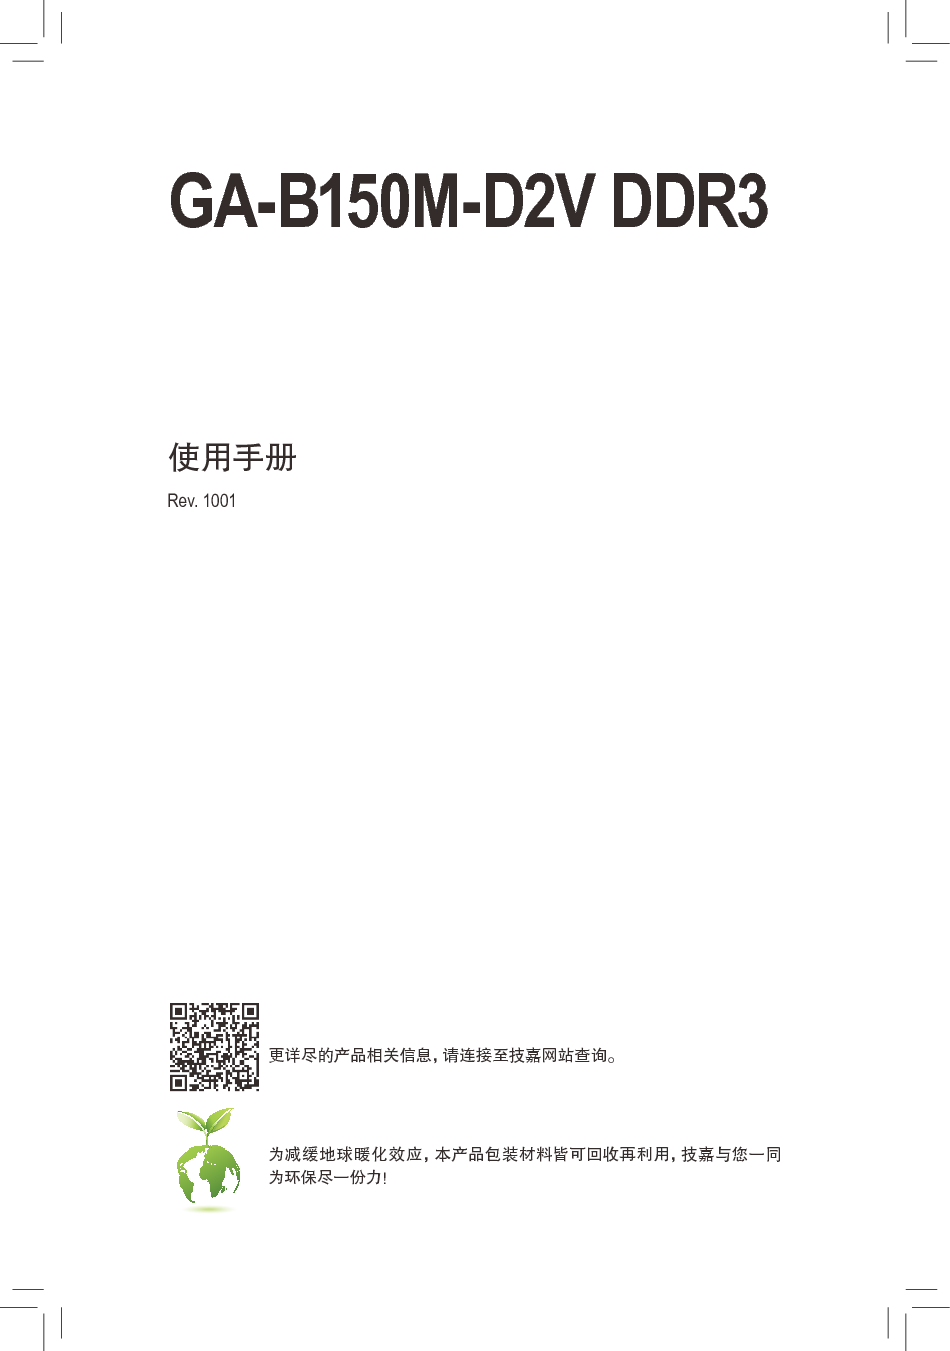 技嘉 Gigabyte GA-B150M-D2V DDR3 使用手册 封面